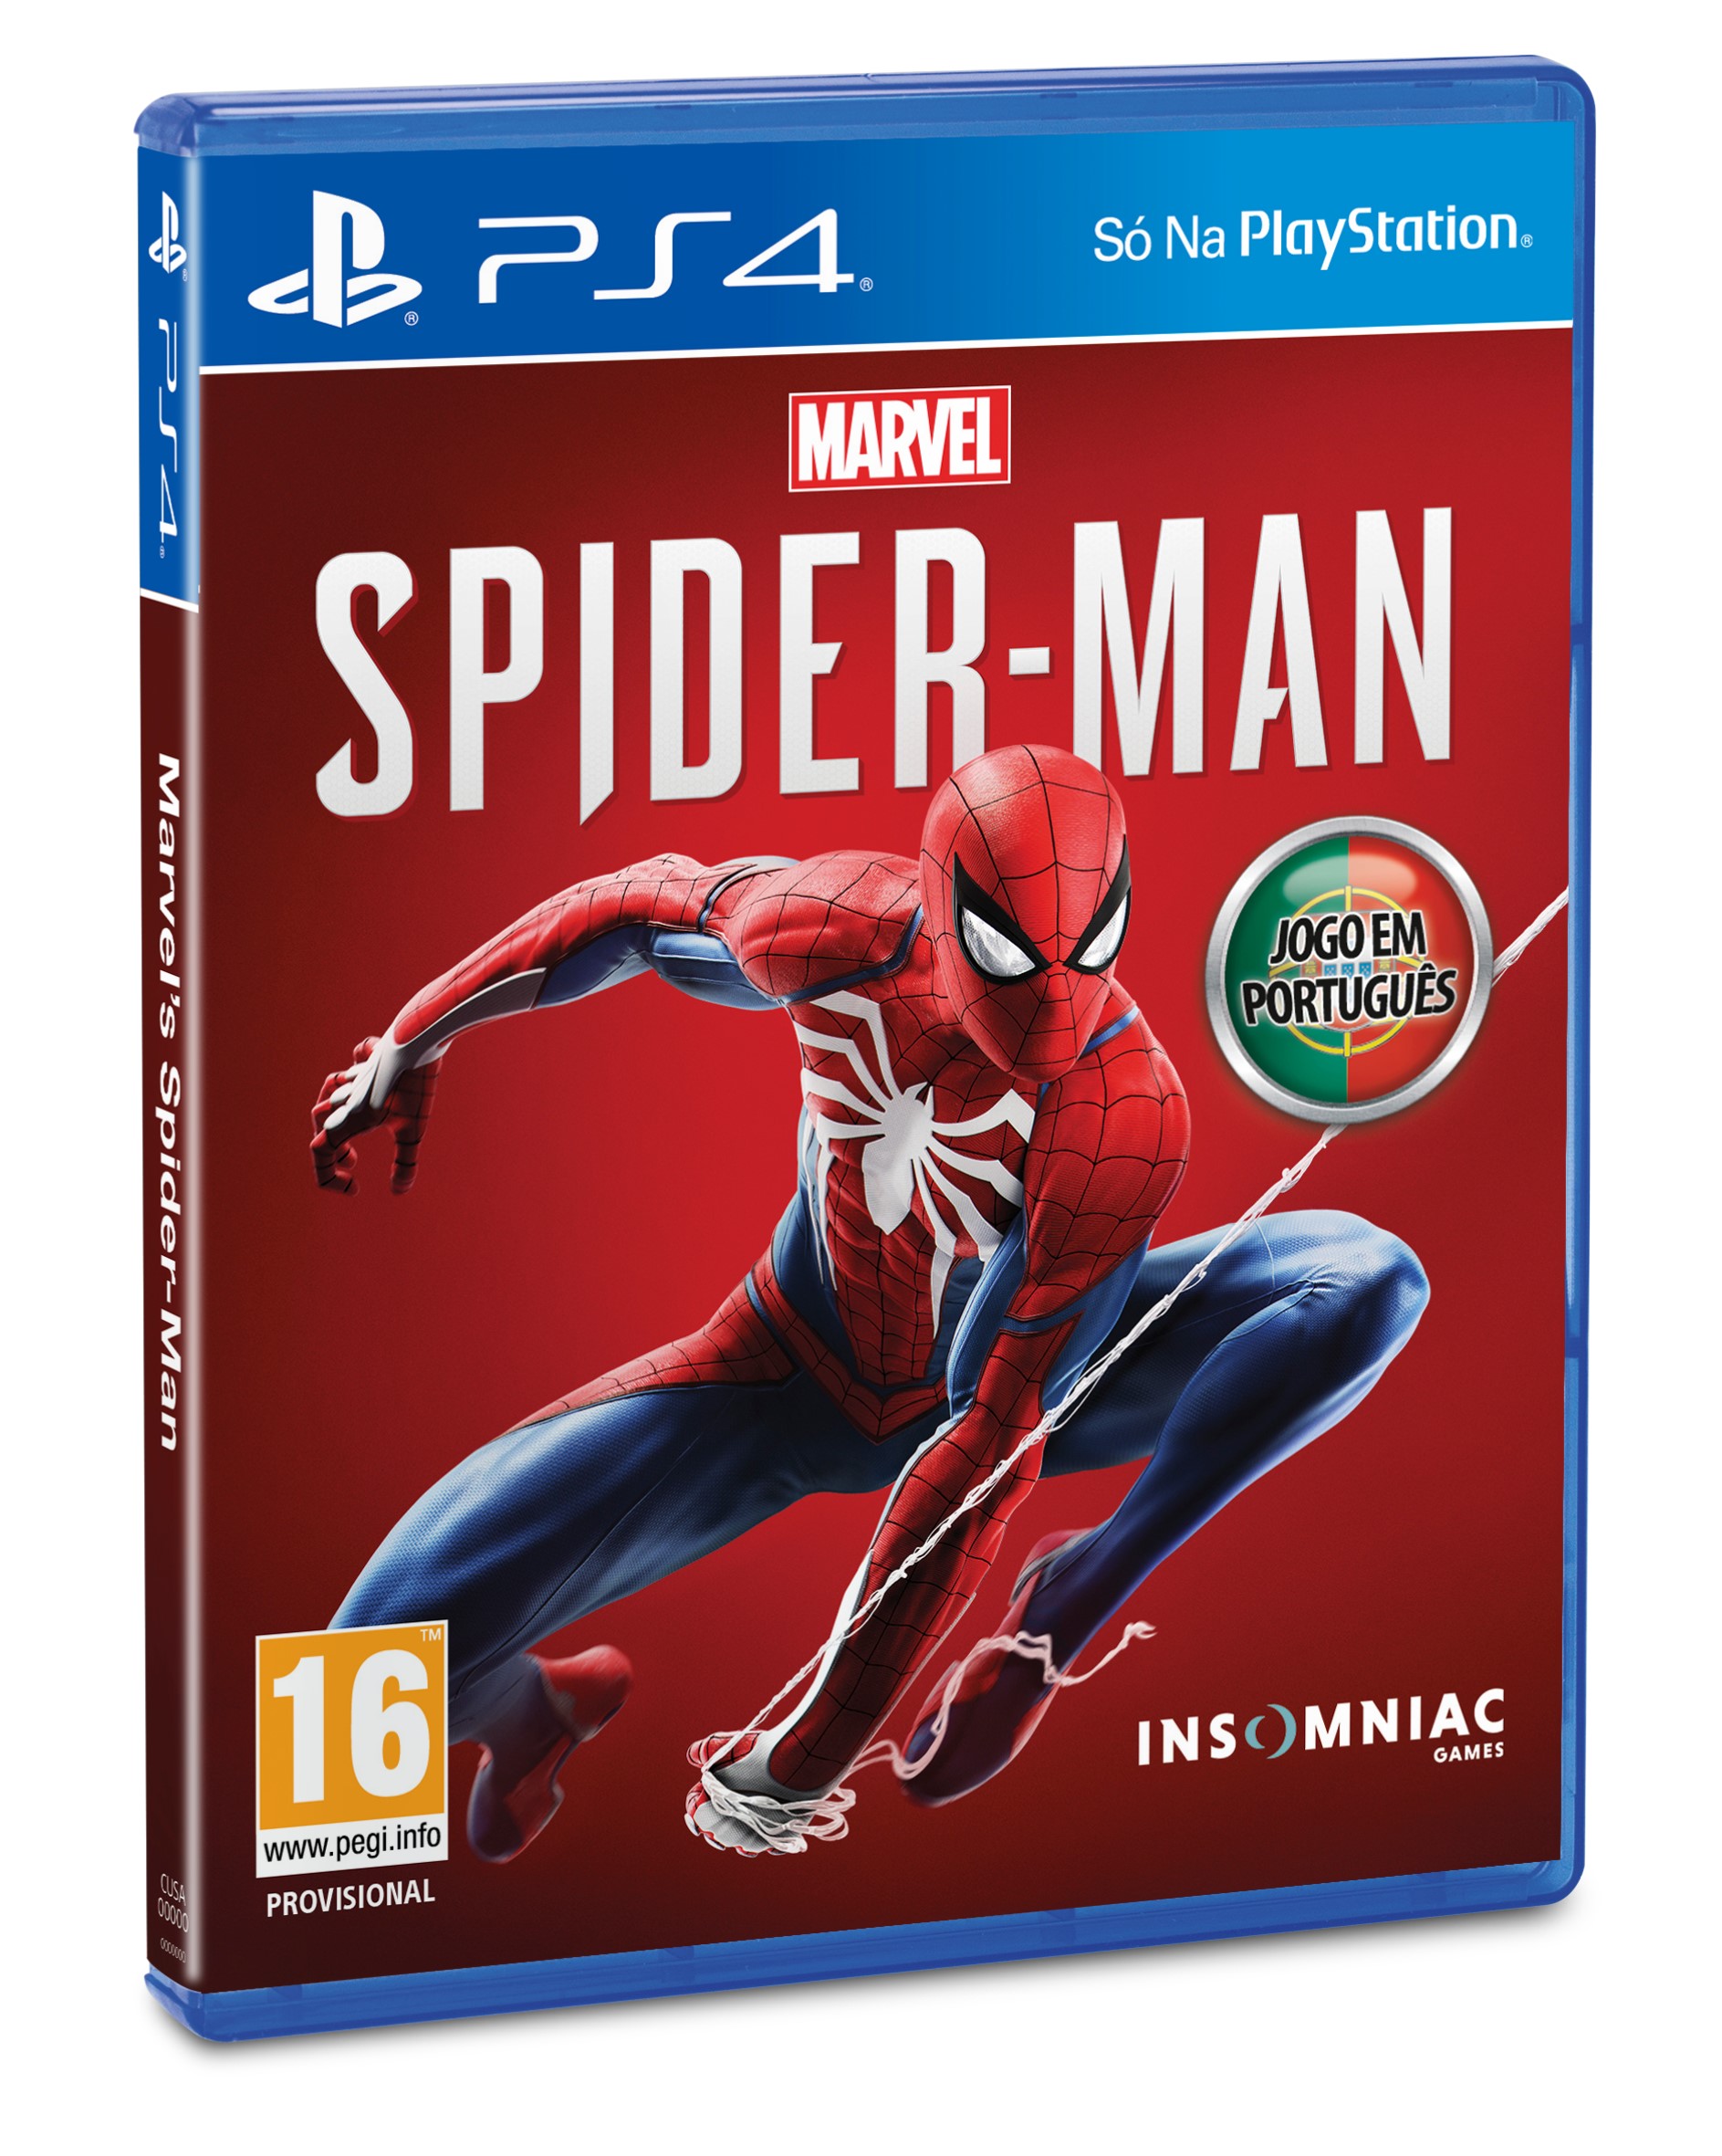 Spider-Man_3D-Packshot_POR.jpg